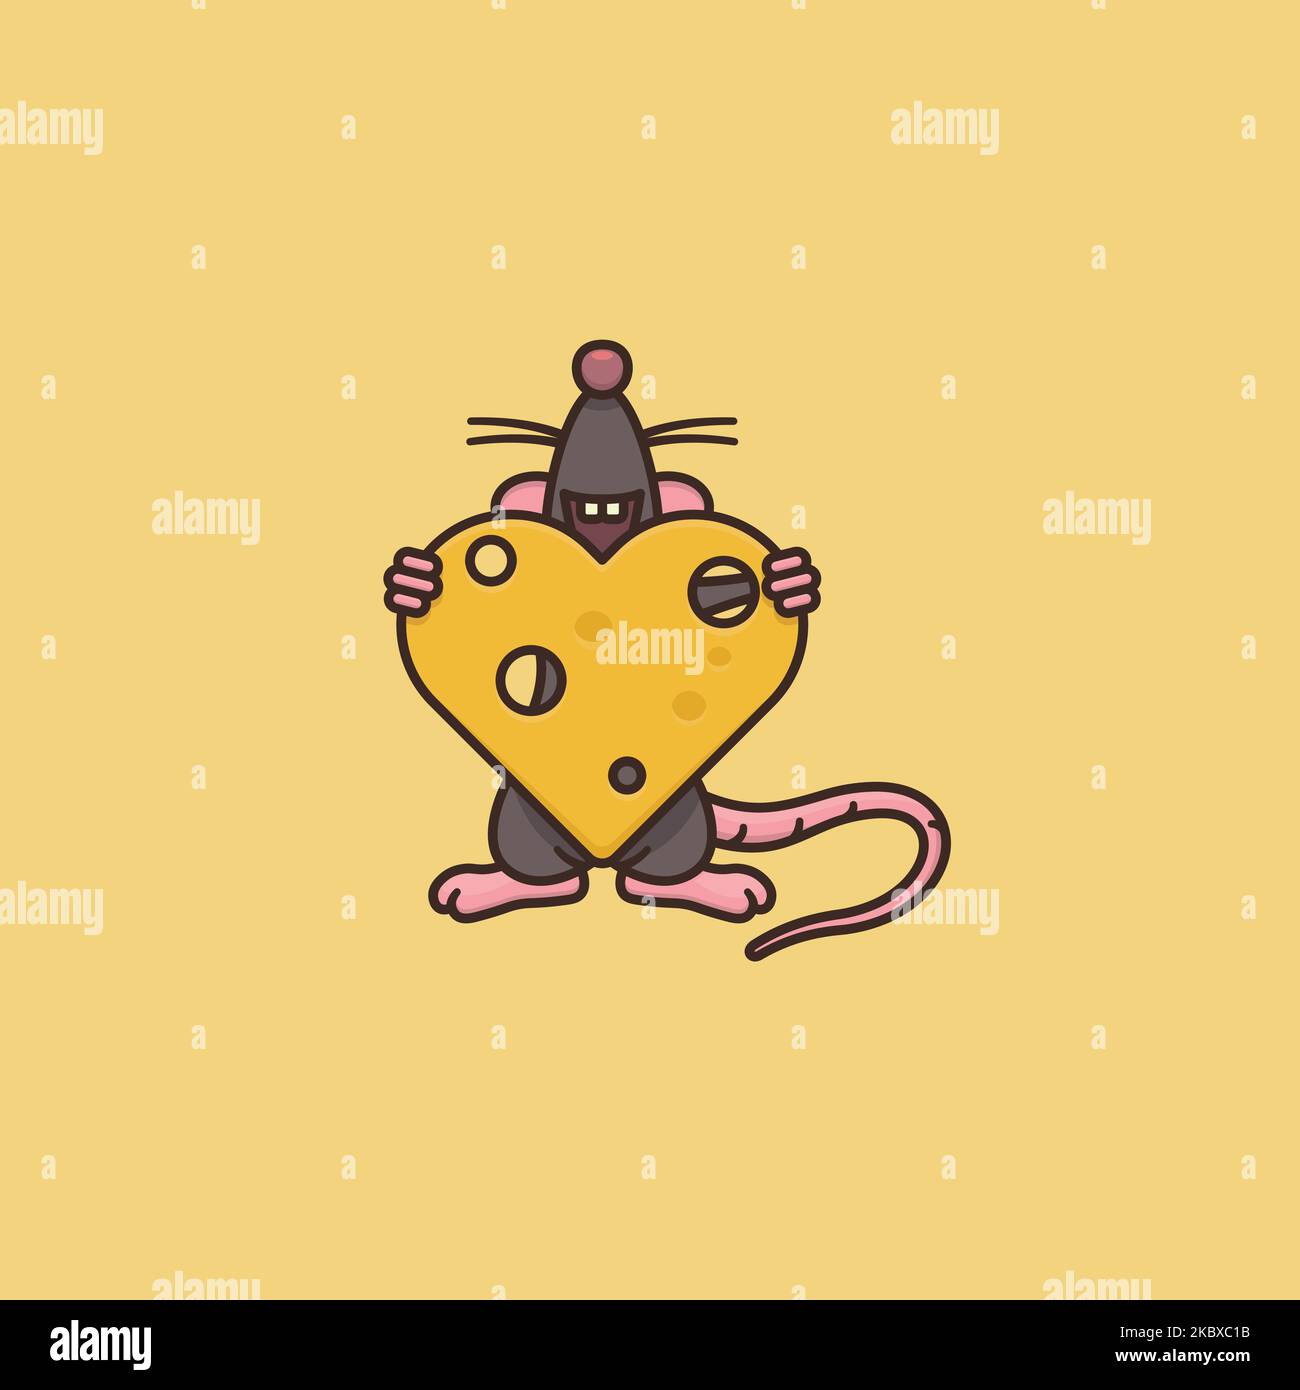 Happy cartoon mouse sosteniendo corazón de ilustración vectorial de queso para el Día del Queso Suizo el 2 de enero Ilustración del Vector